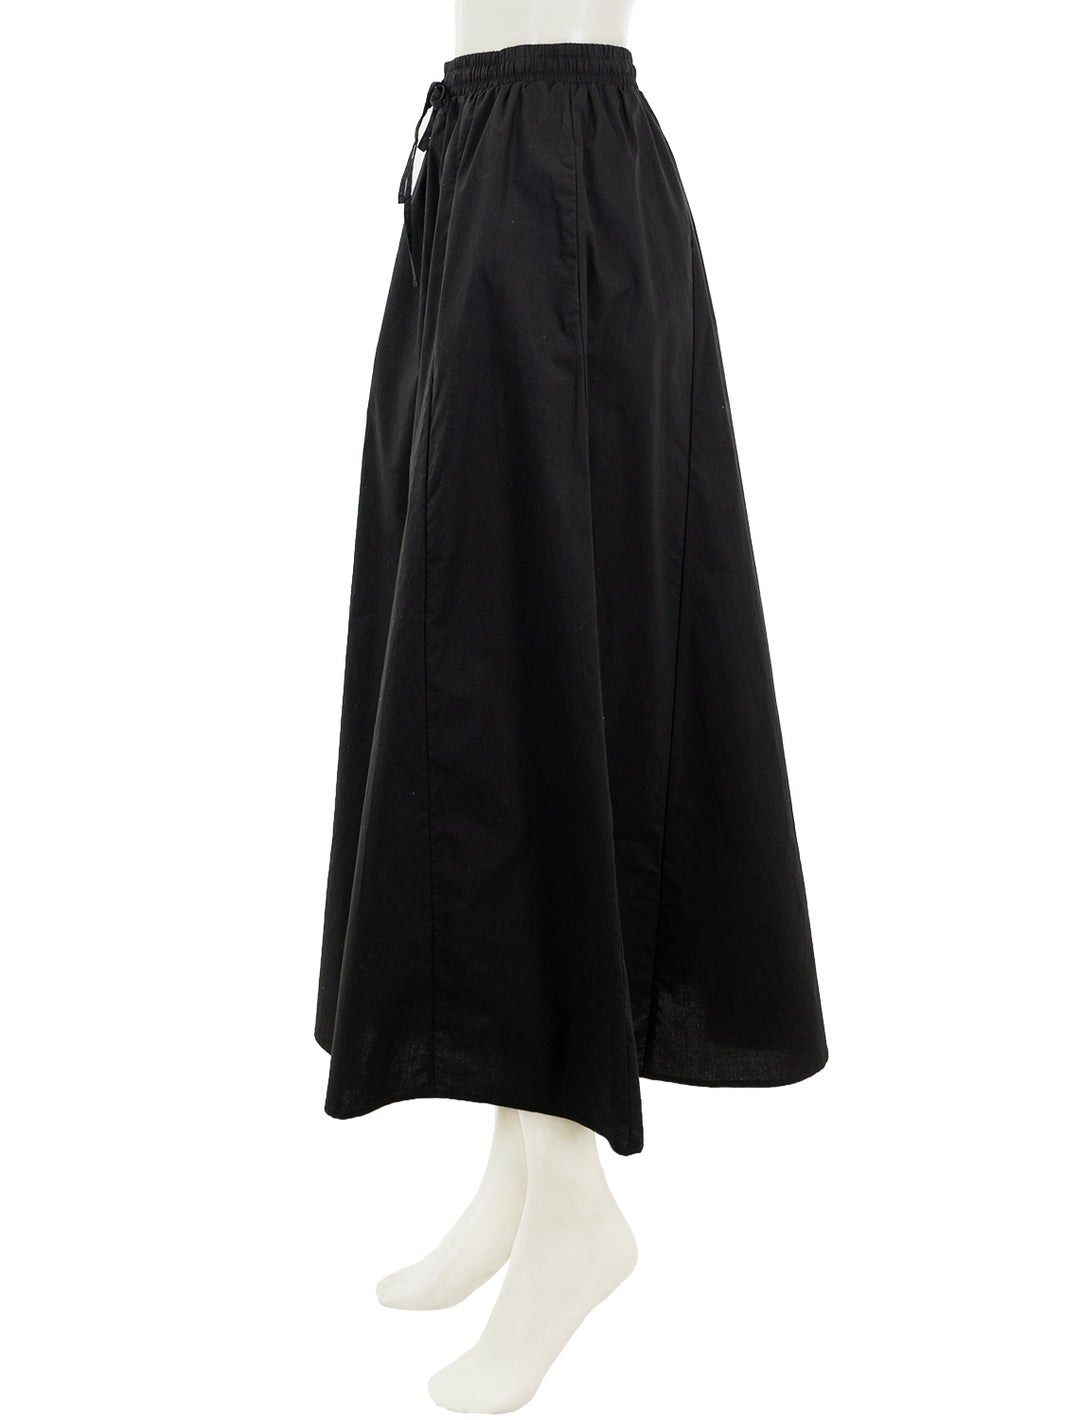 Side view of Steve Madden's sunny skirt in black.